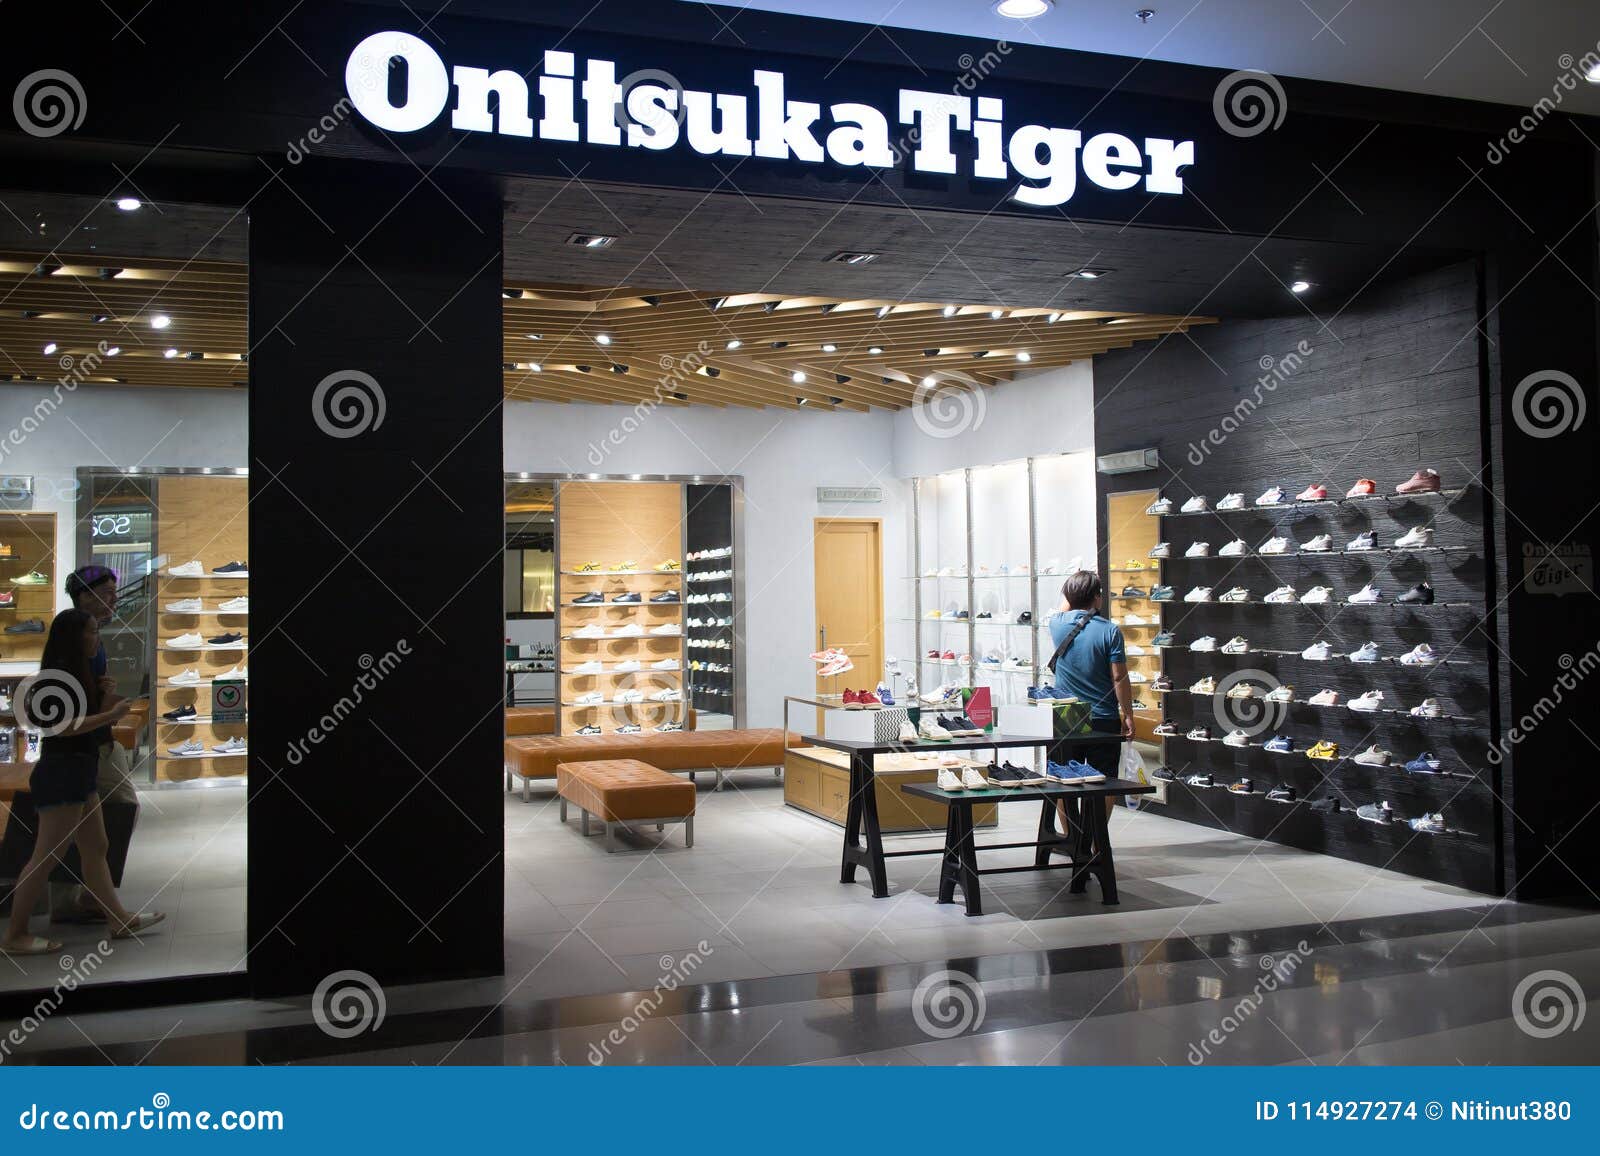 onitsuka tiger bangkok